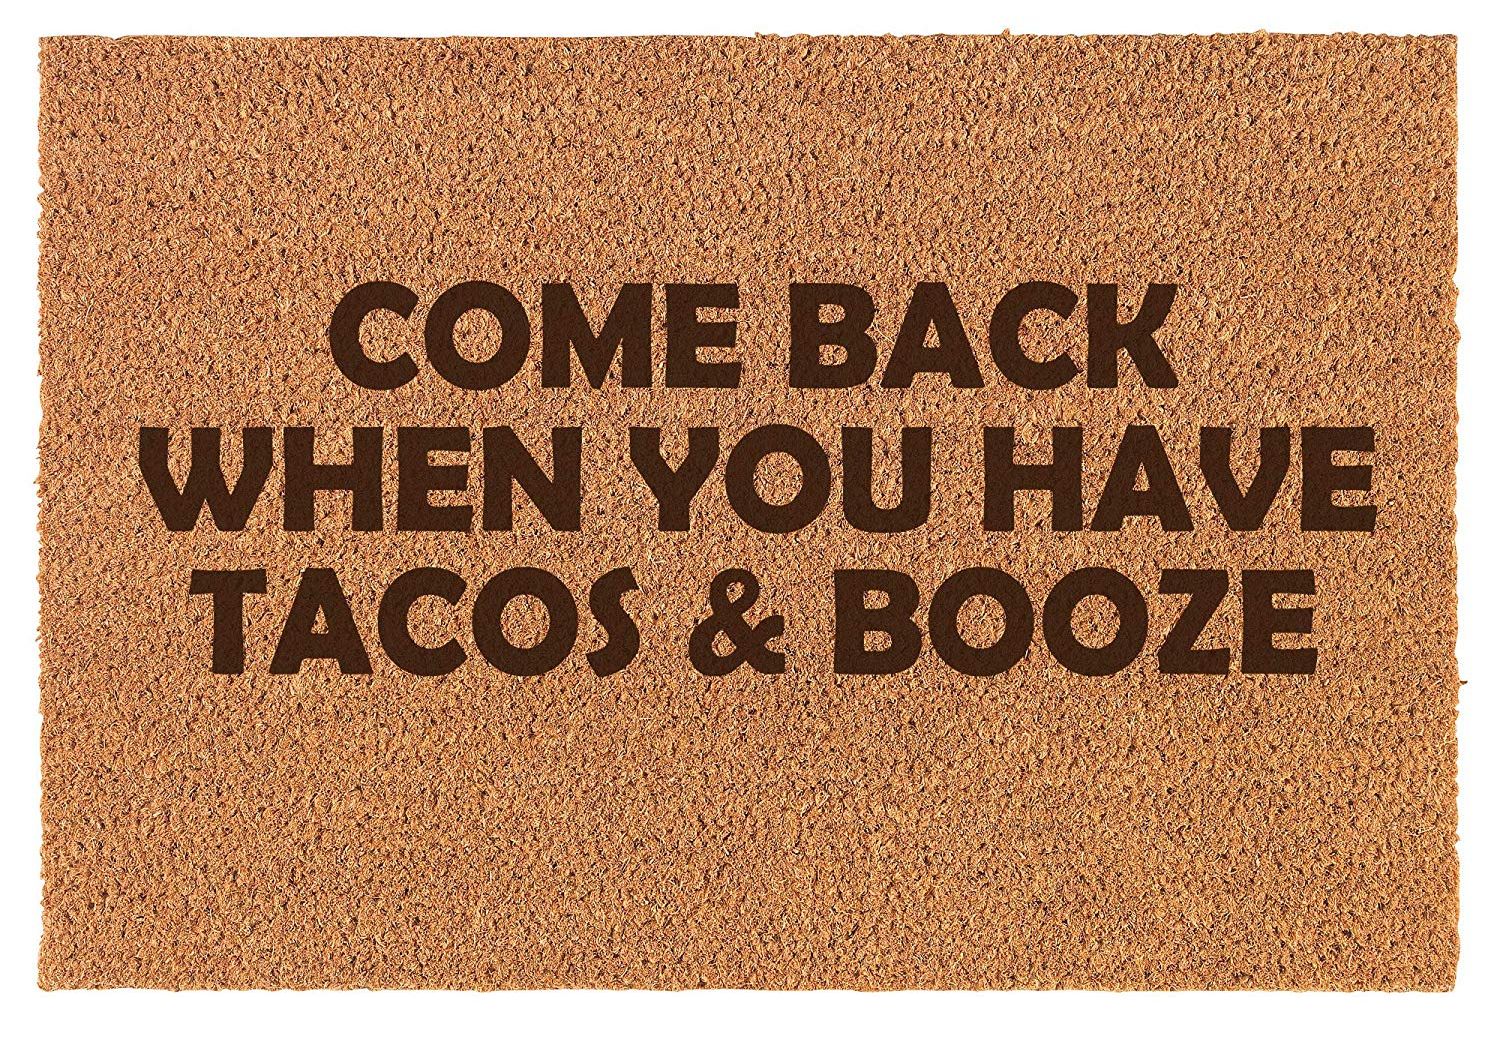 Tacos & booze, anyone